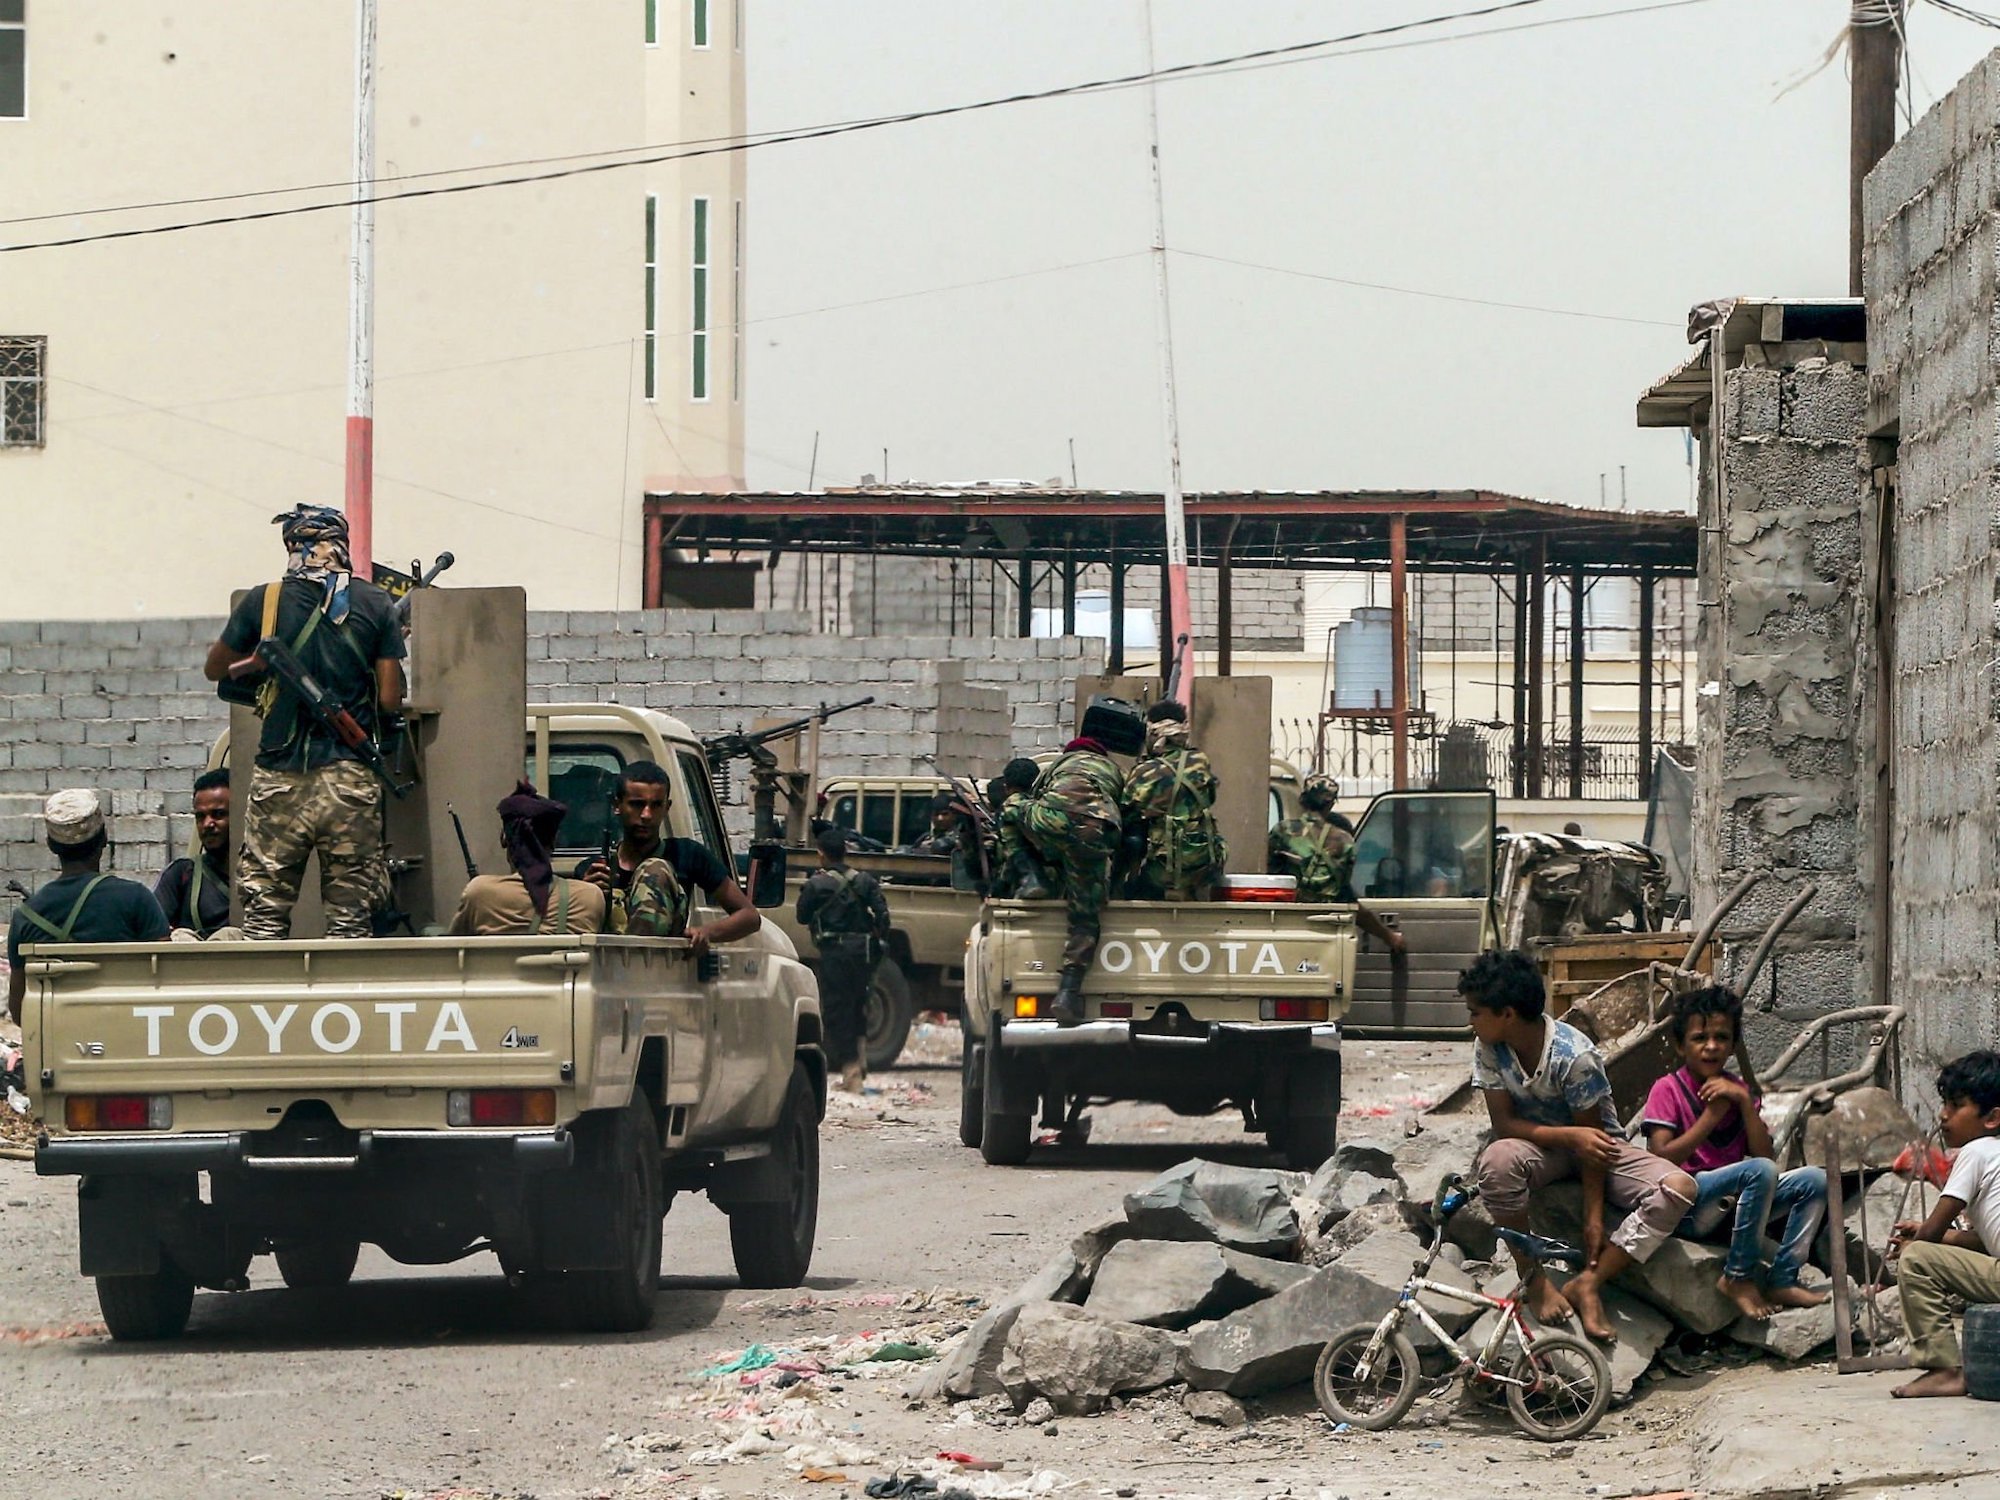 Al-Qaeda fighters in Aden, Yemen